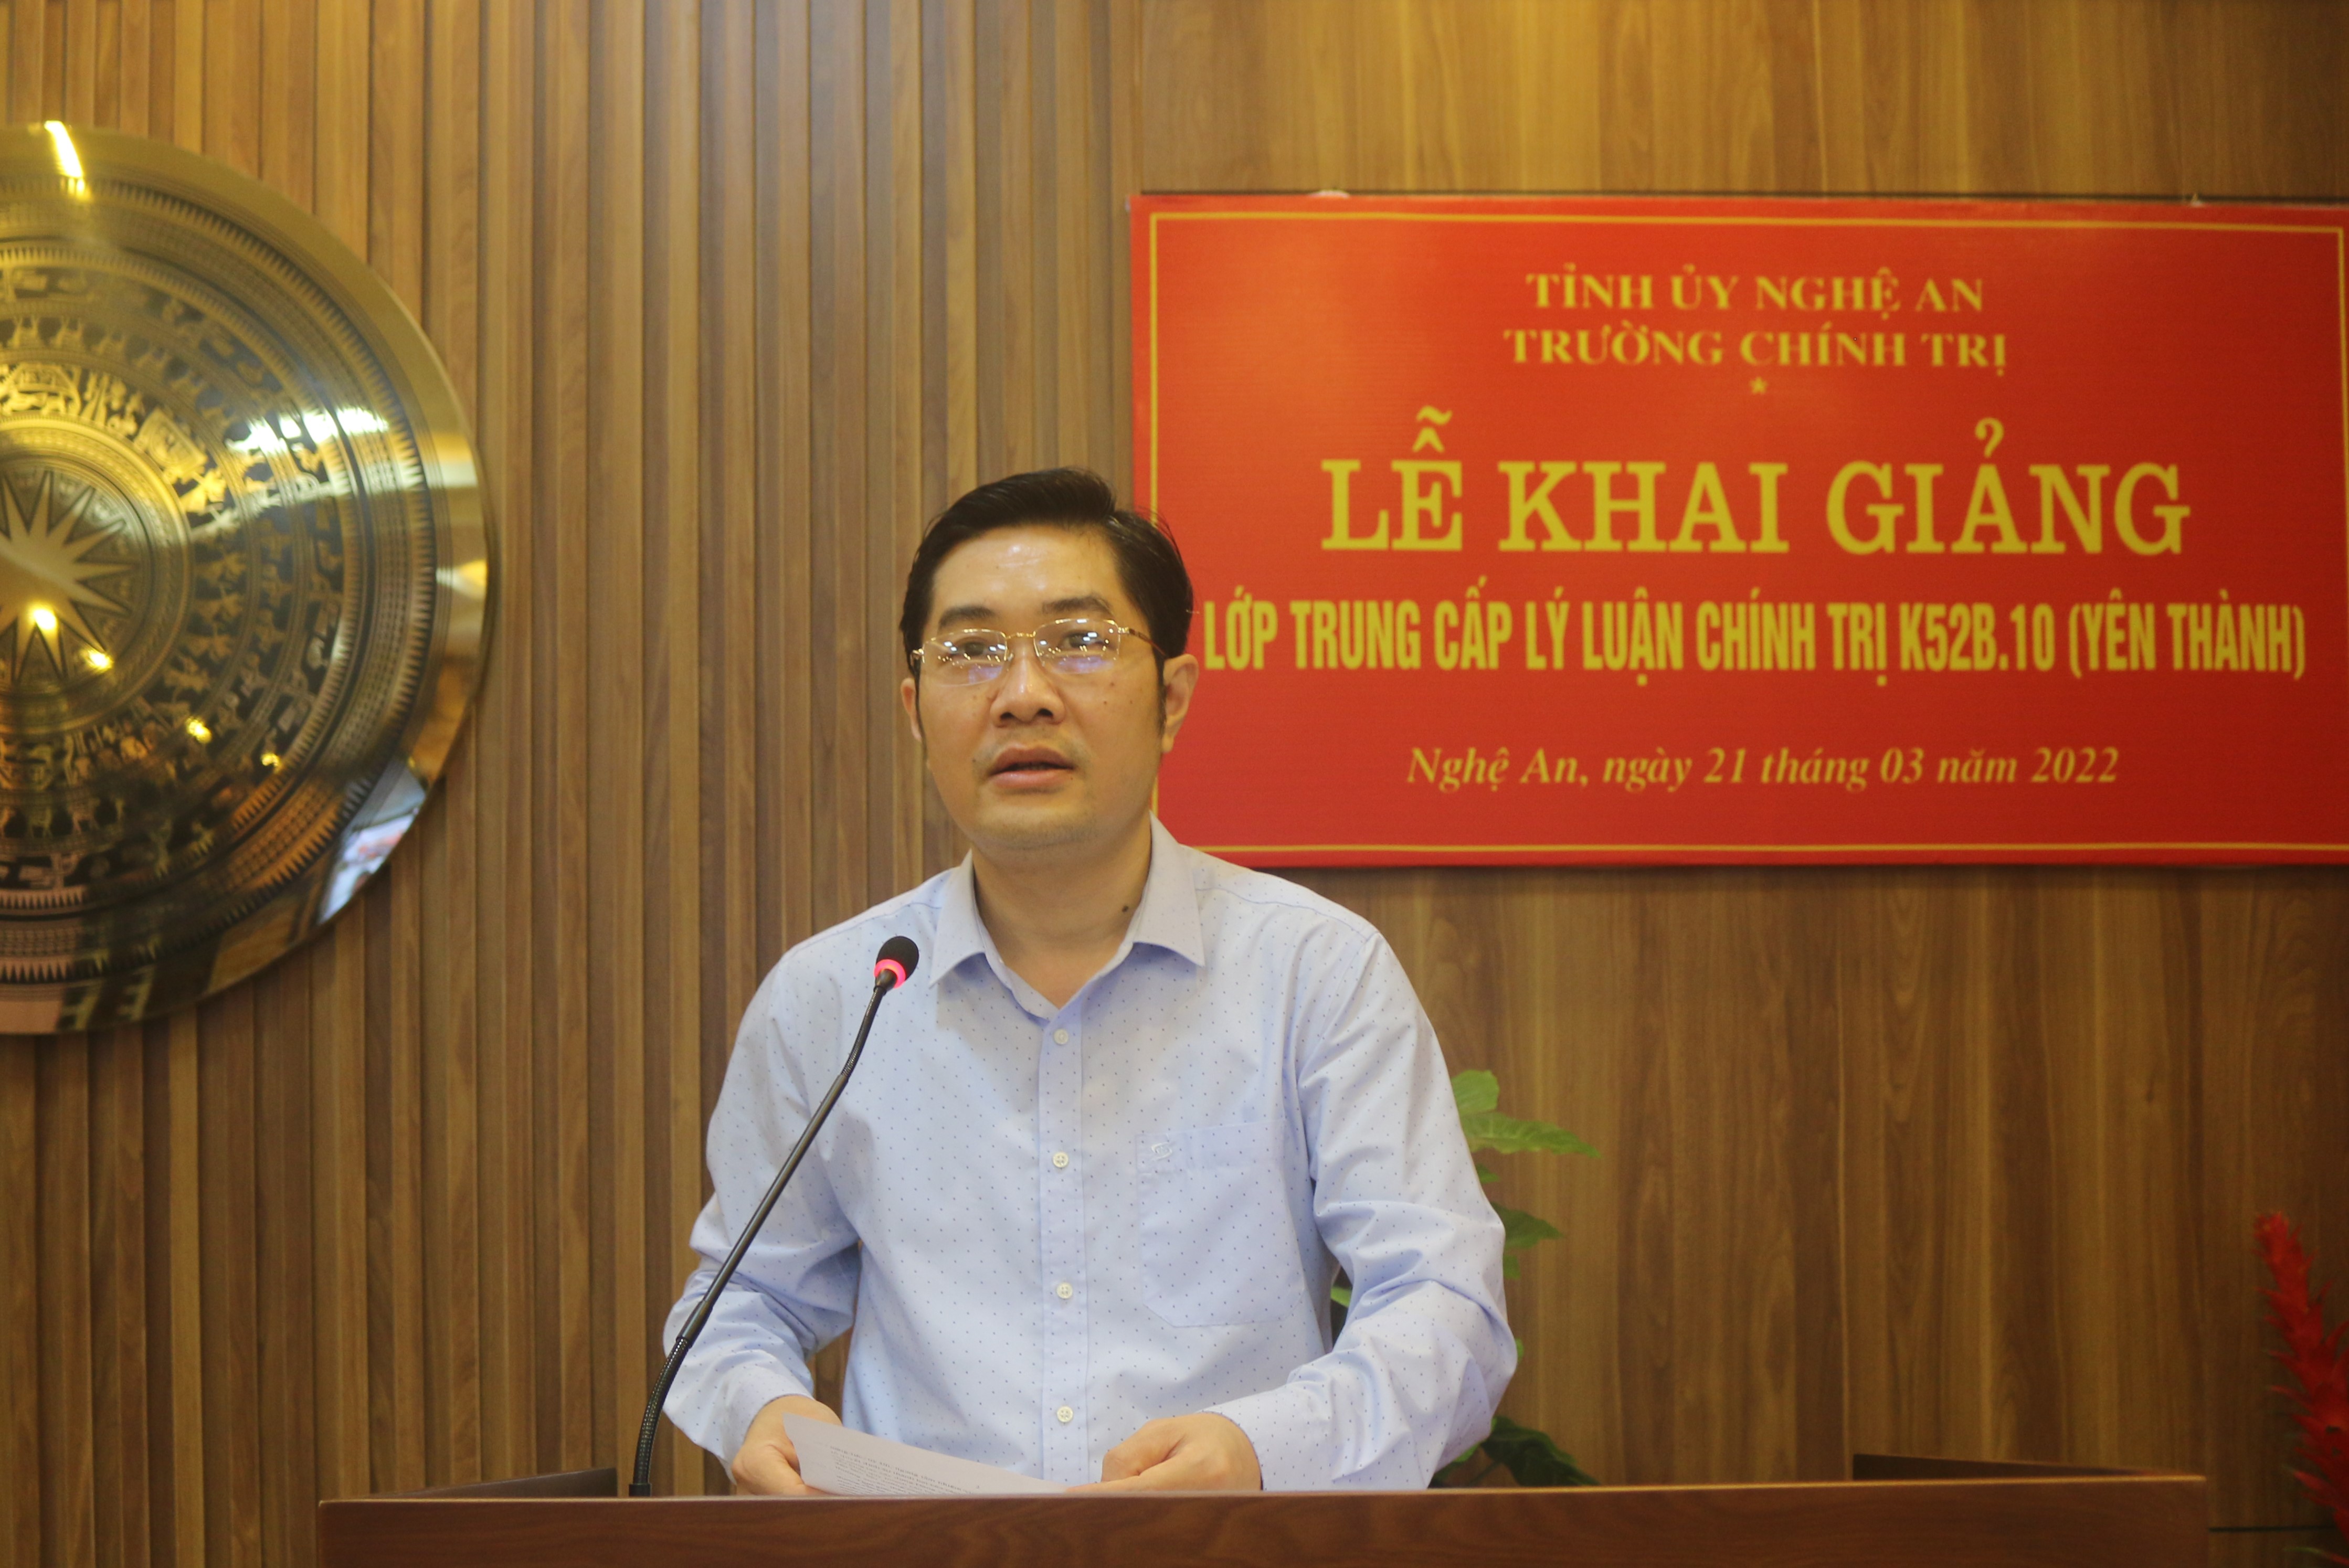 Khai giảng trực tuyến lớp Trung cấp lý luận chính trị K52B.10 mở tại Yên Thành, hệ không tập trung, khóa học 2022 - 2023